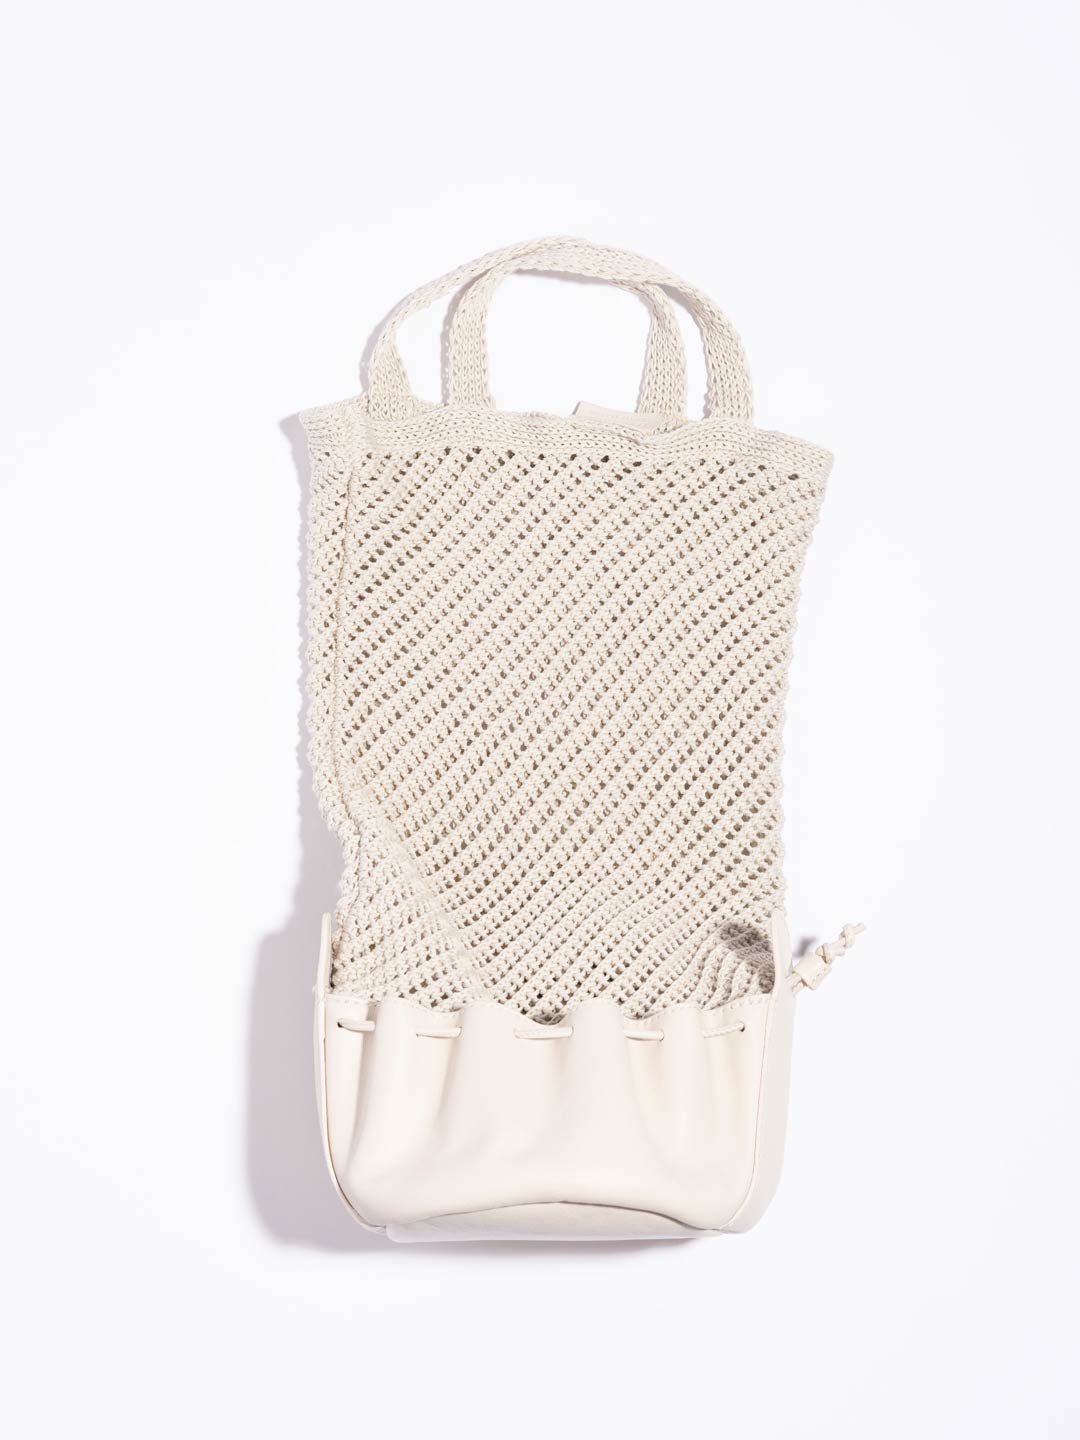 Fruita Packable Knitted Cotton Net Bag - Cream